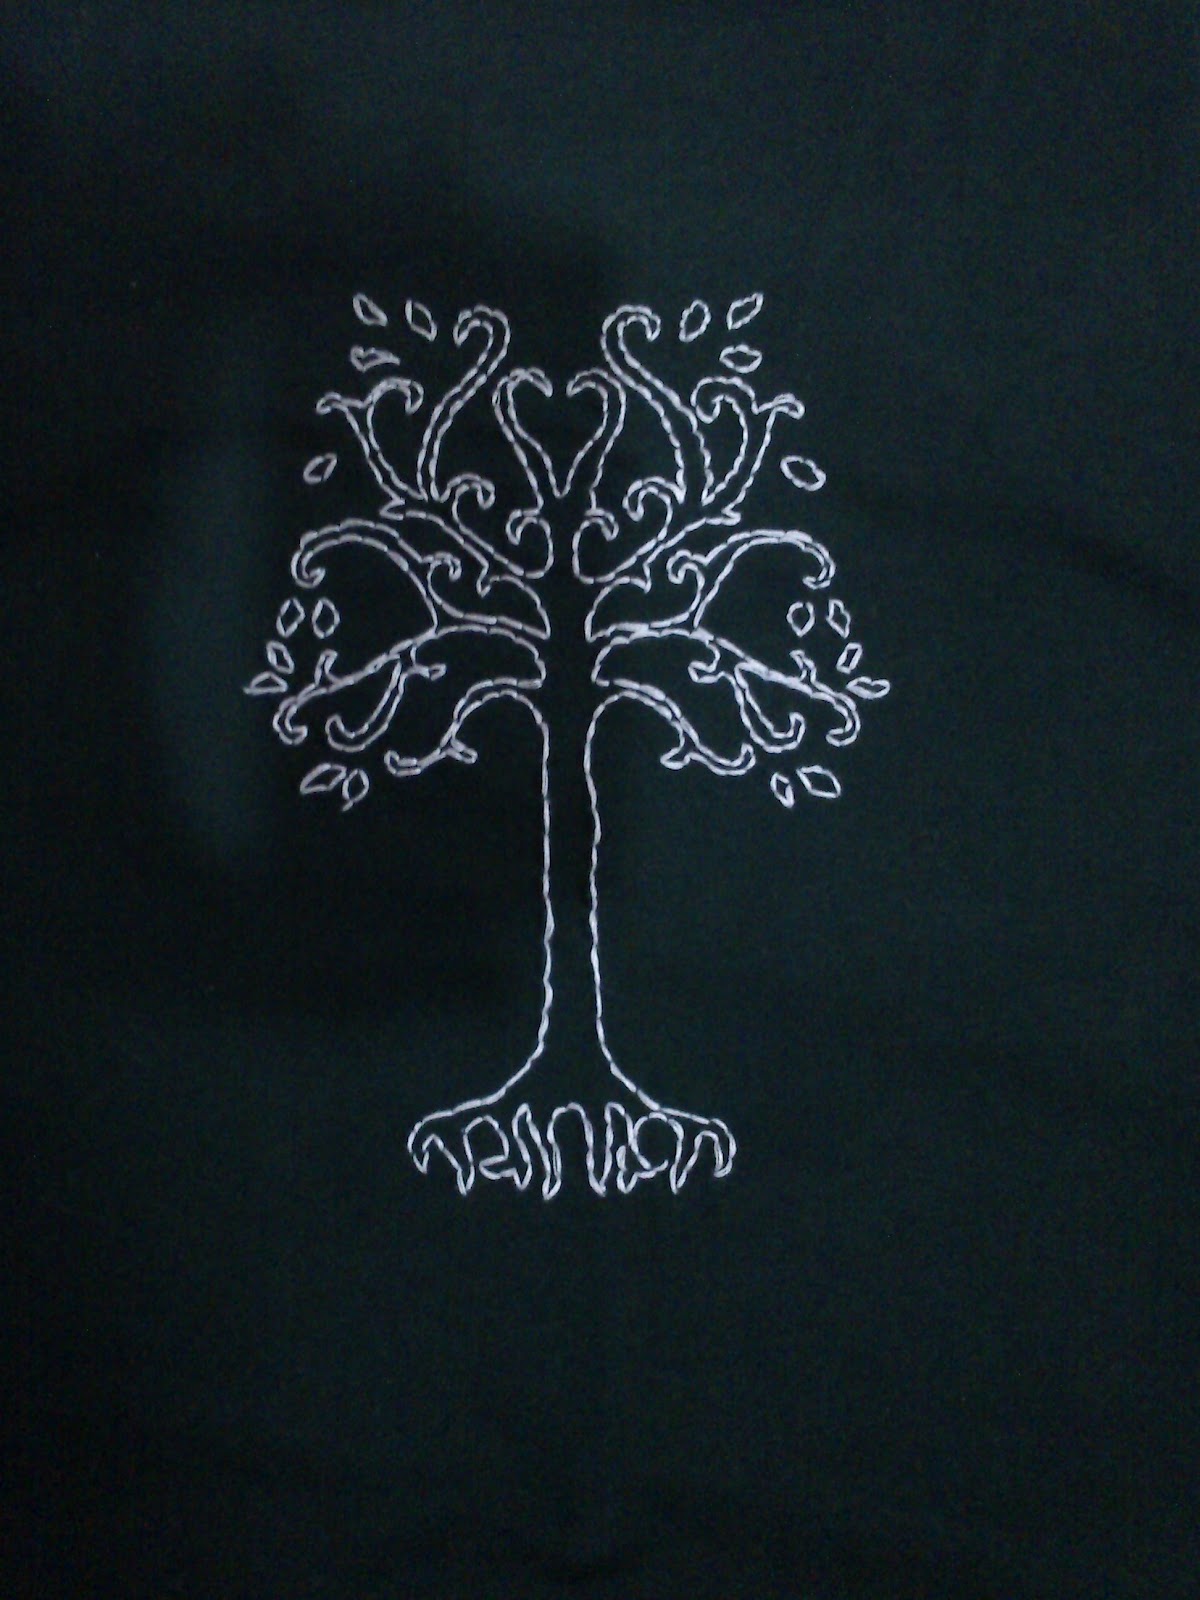 Customiza Es Vb The White Tree Of Gondor